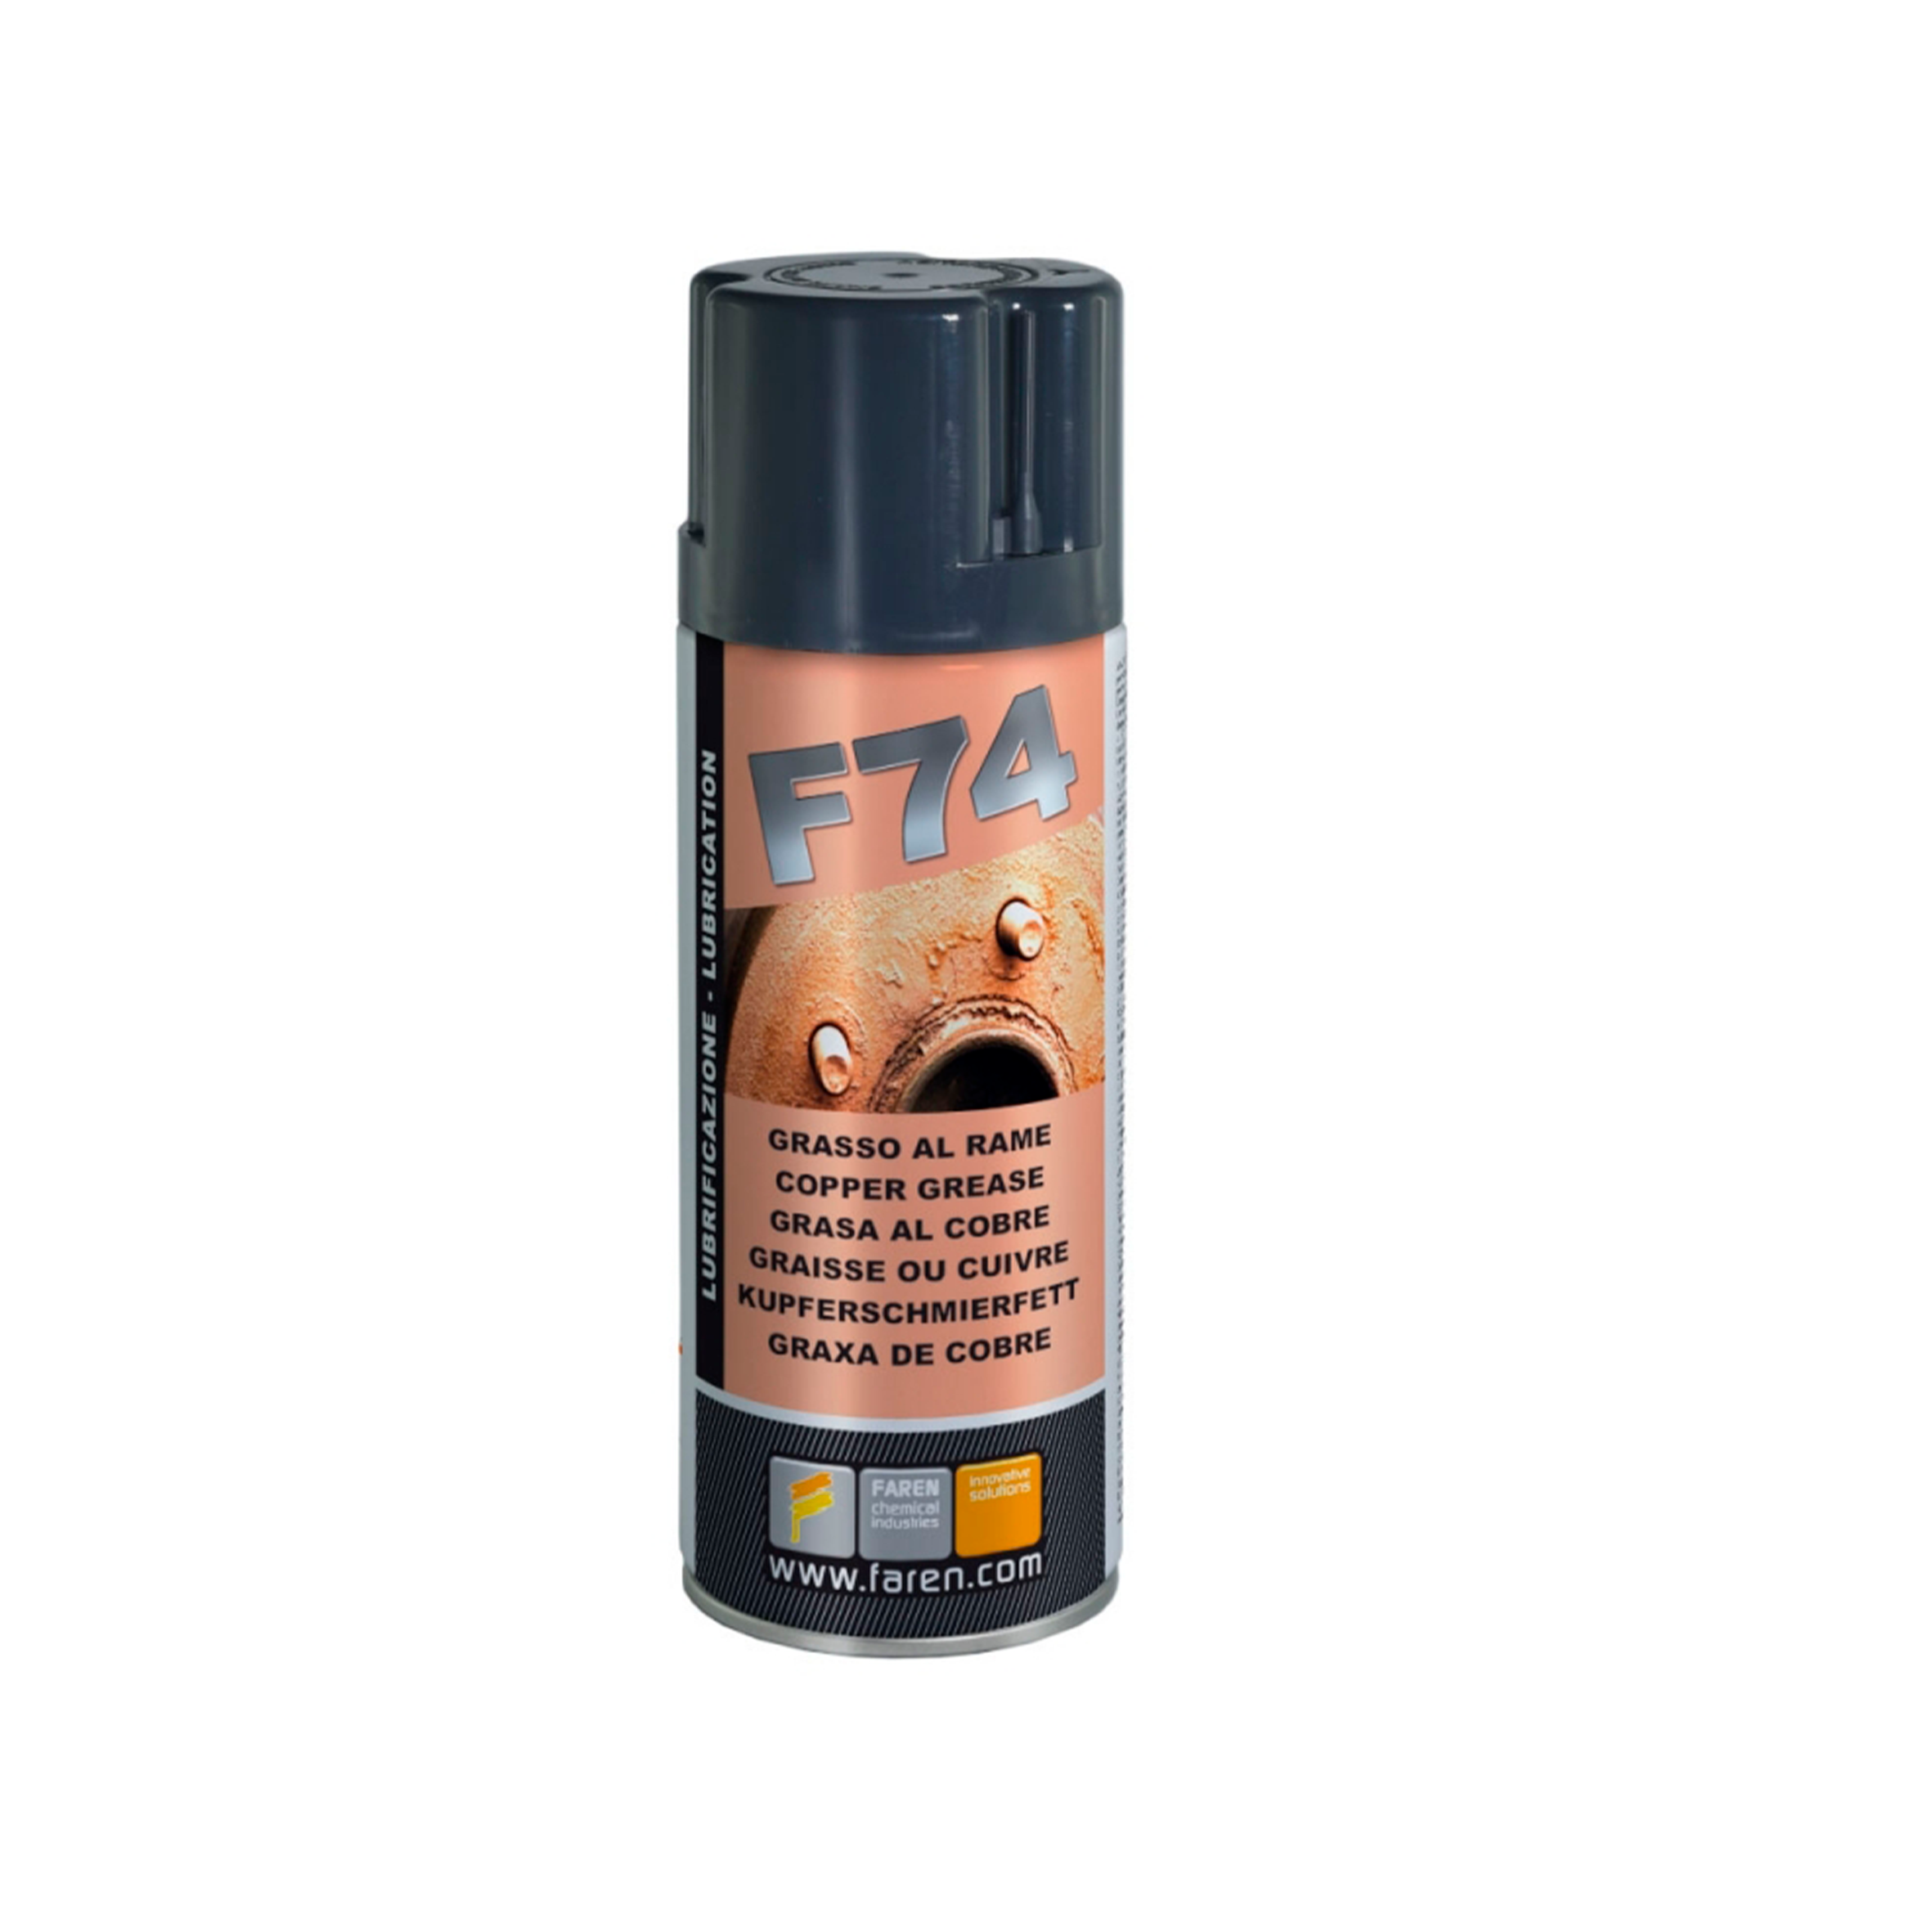 Grasa de cobre F74 en Spray  Comprar online al mejor precio